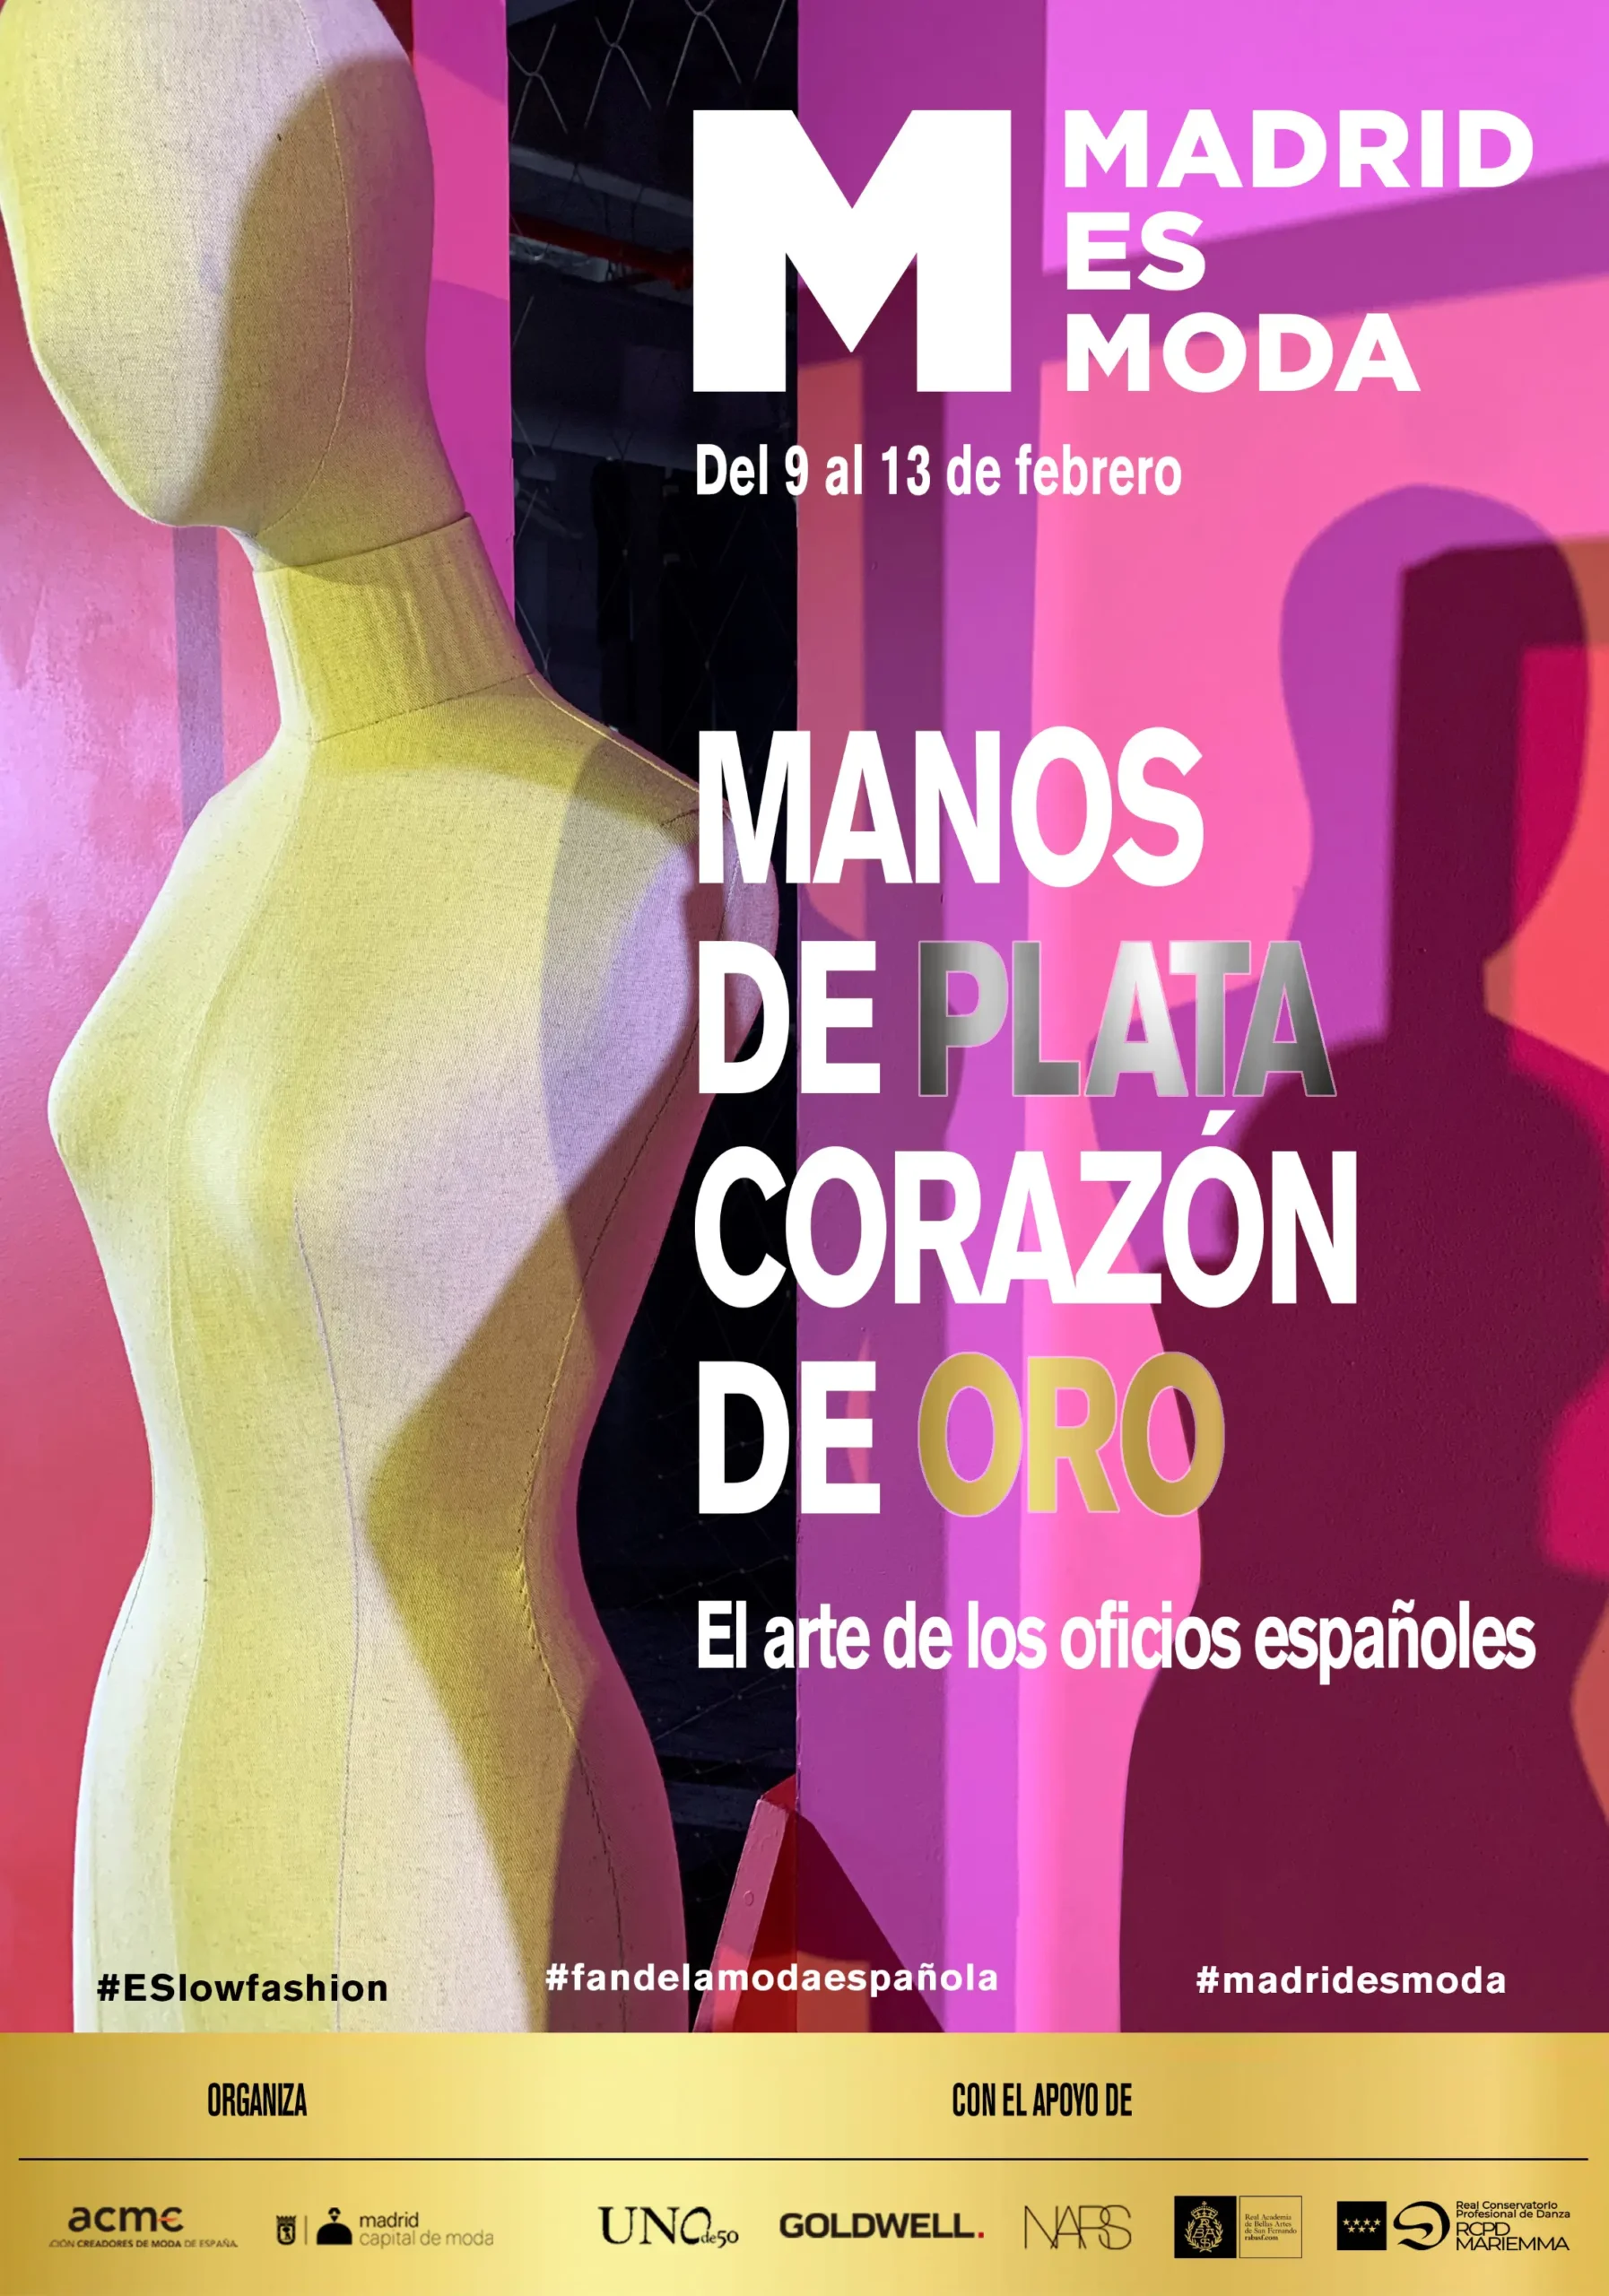 Madrid es Moda (del 9 al 13 de febrero) abrirá con un evento urbano que unirá moda y danza en pleno centro de Madrid